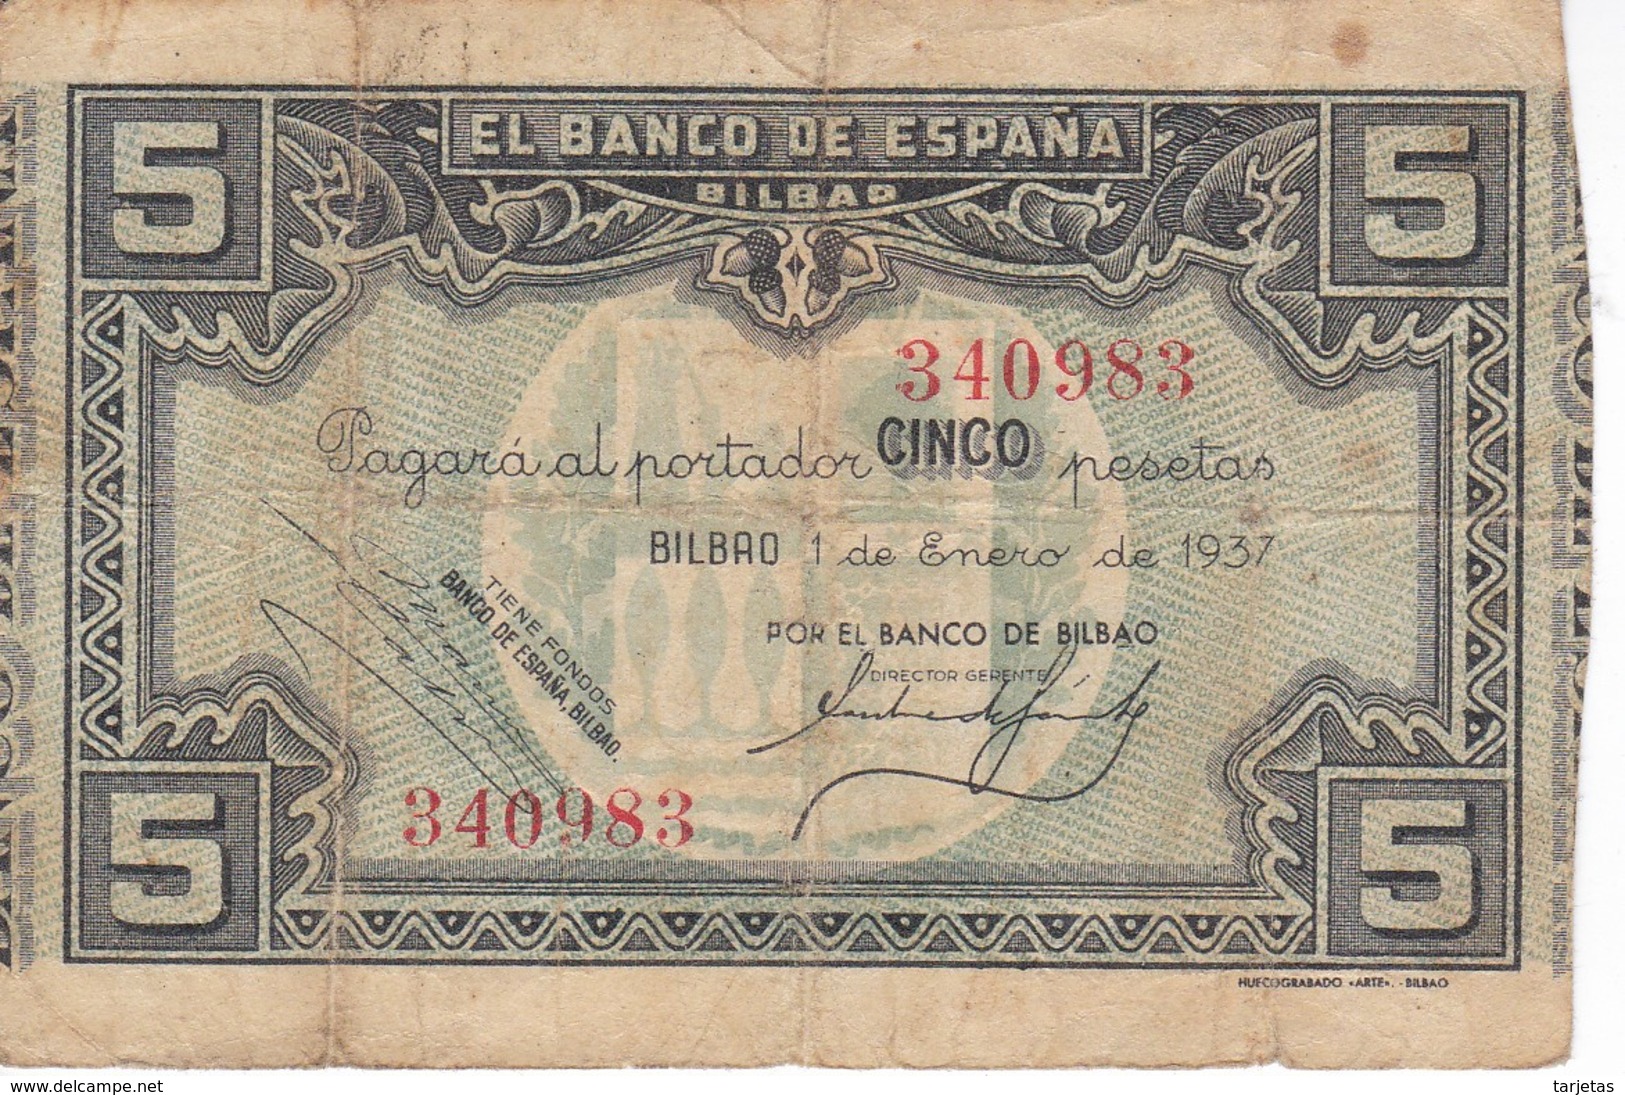 BILLETE DE ESPAÑA 5 PTAS DEL BANCO DE BILBAO 1937 - FIRMA BANCO BILBAO (BANKNOTE) - 5 Pesetas